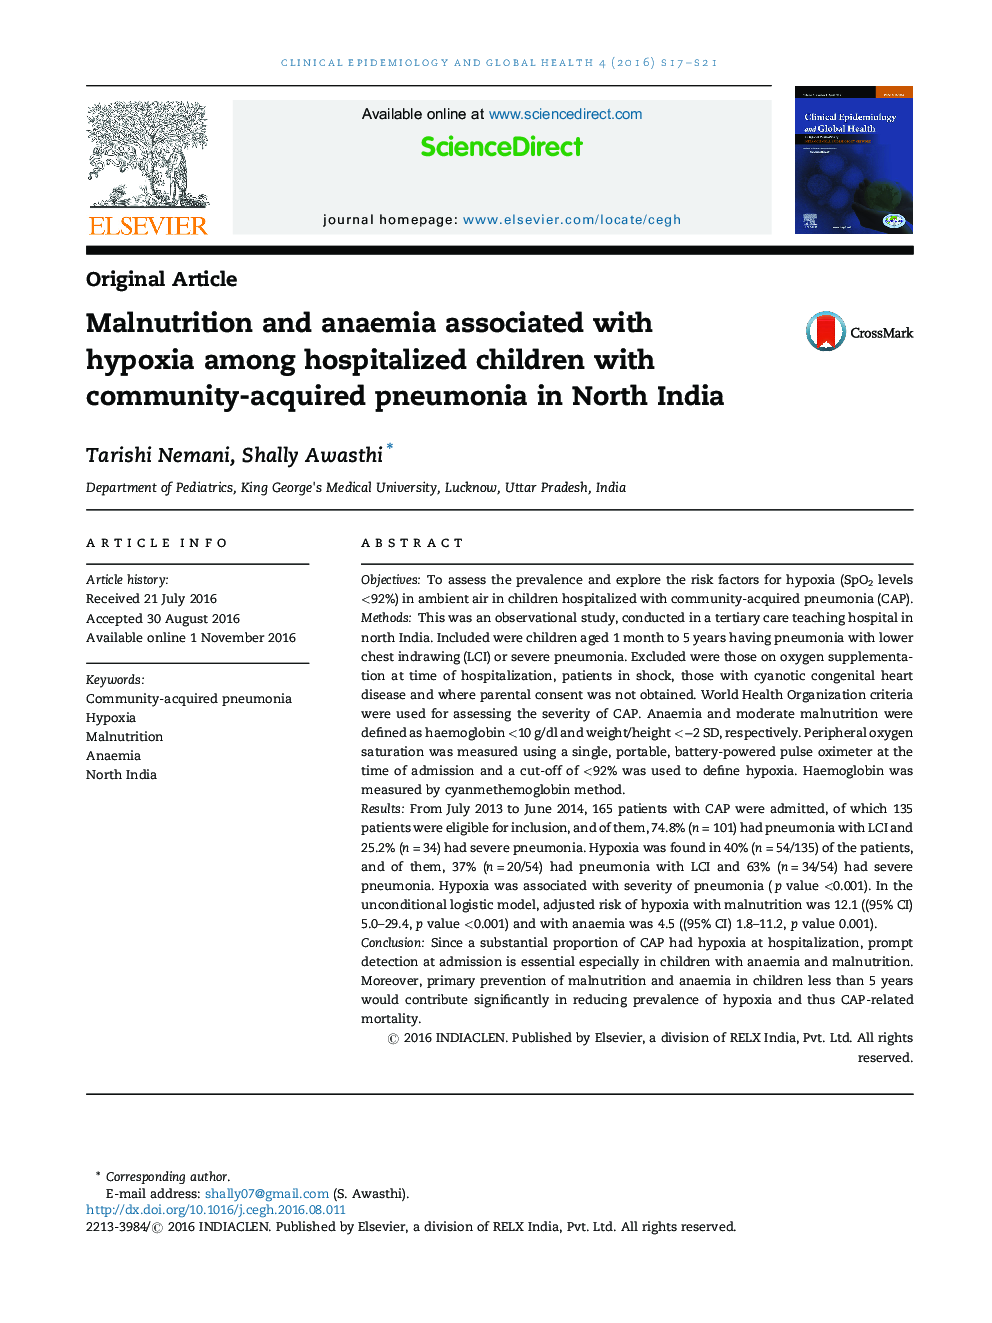 سوء تغذیه و کم خونی در ارتباط با هیپوکسی در میان کودکان بستری شده مبتلا به پنومونی در شمال هند است 